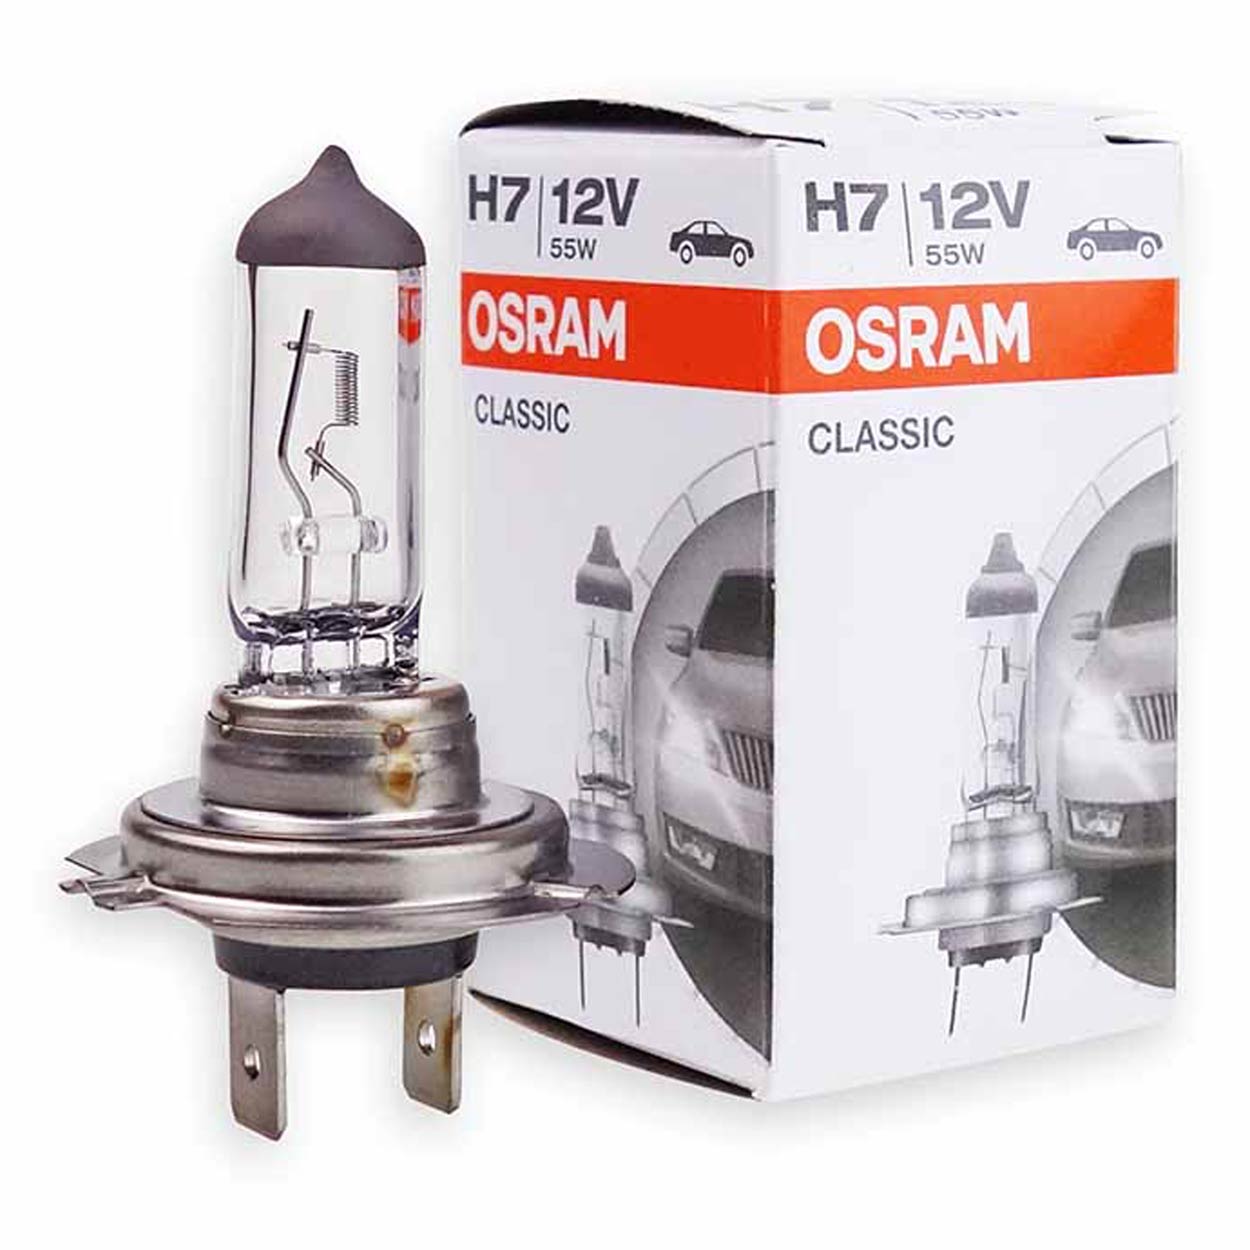 Osram Autoscheinwerferlampe / 12 V 55 W H7 / Am beliebtesten – Glühbirnen – Glühbirnen für Autos 12 V – spo-cs-disabled – spo-default – spo